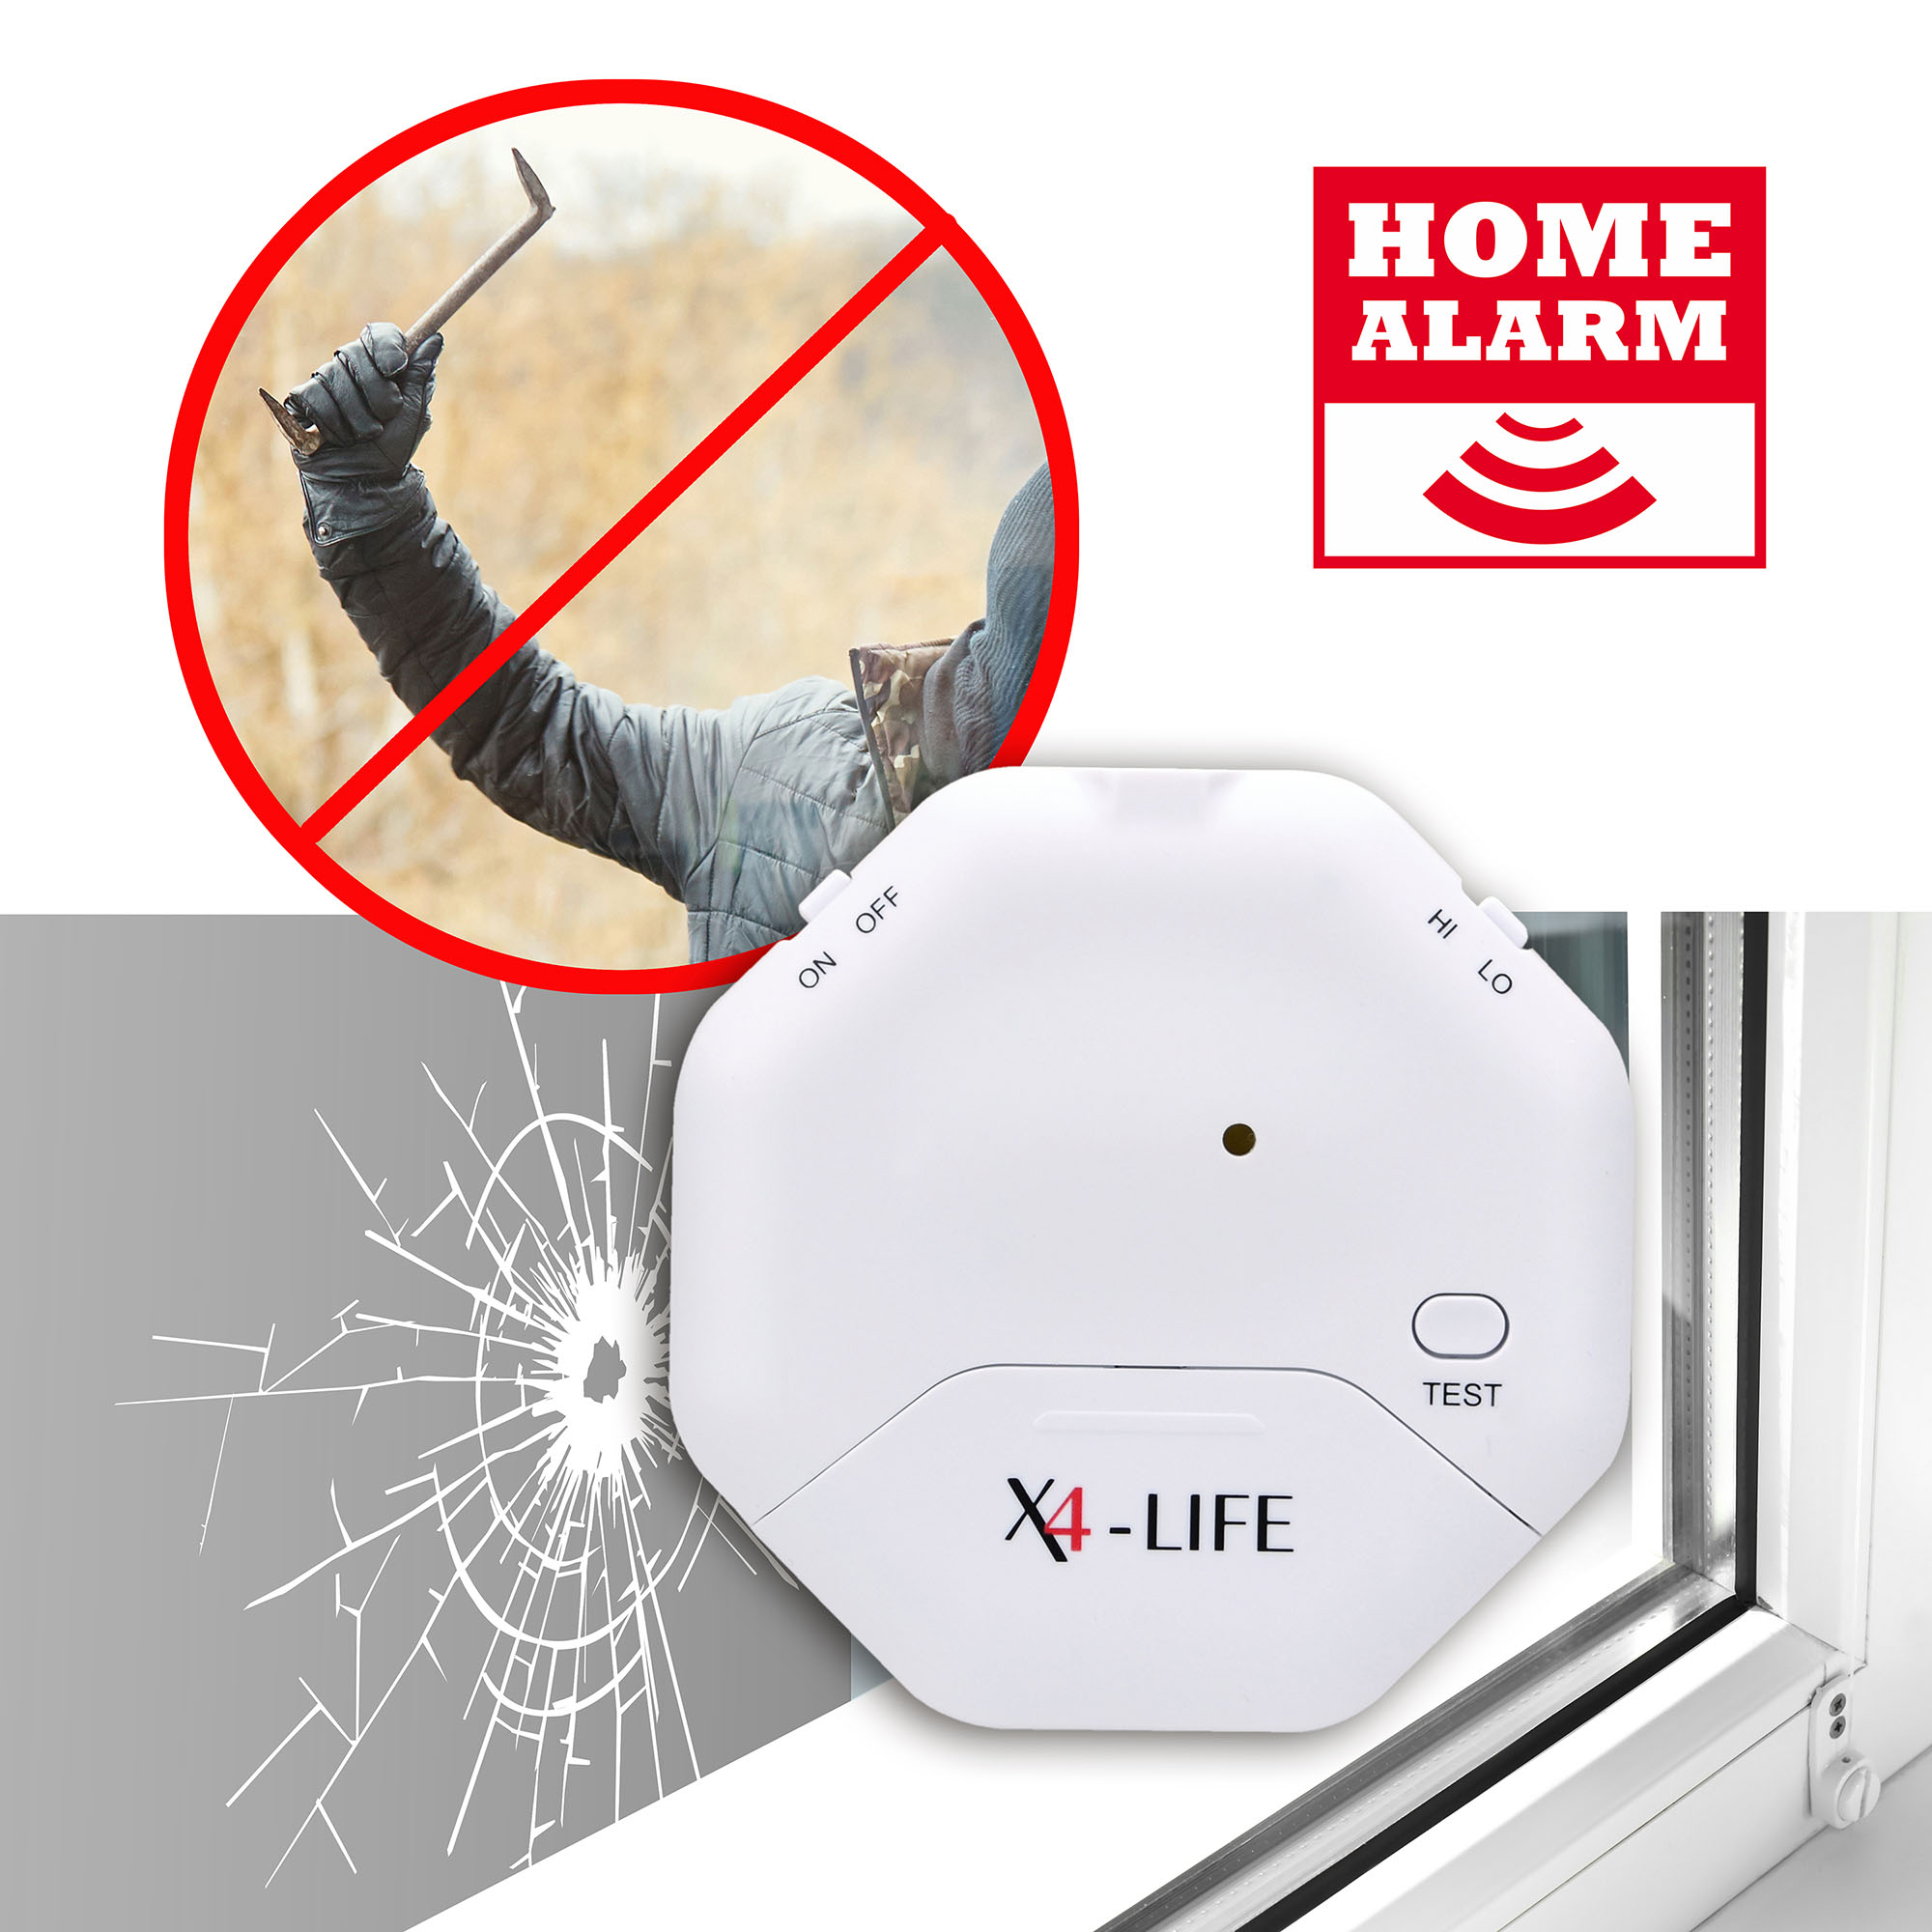 5x X4-LIFE Security Glasbruchmelder - Türalarm Fensteralarm Einbruchschutz